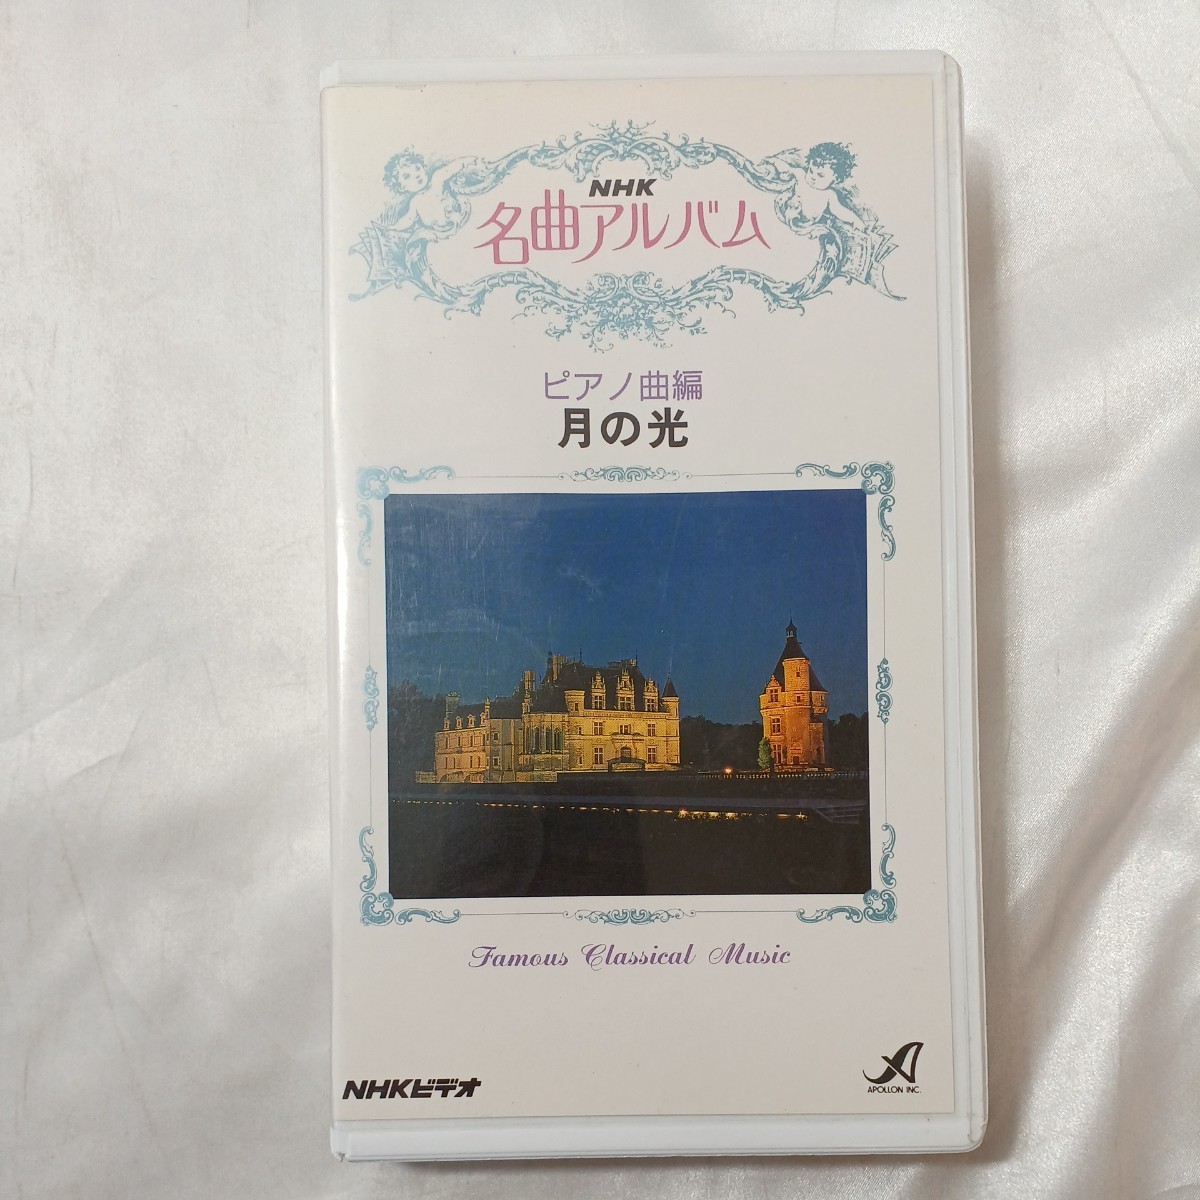 zvd-03!NHK шедевр альбом фортепианная пьеса сборник месяц. свет NHK видео VHS 1993/02/21 25 минут 